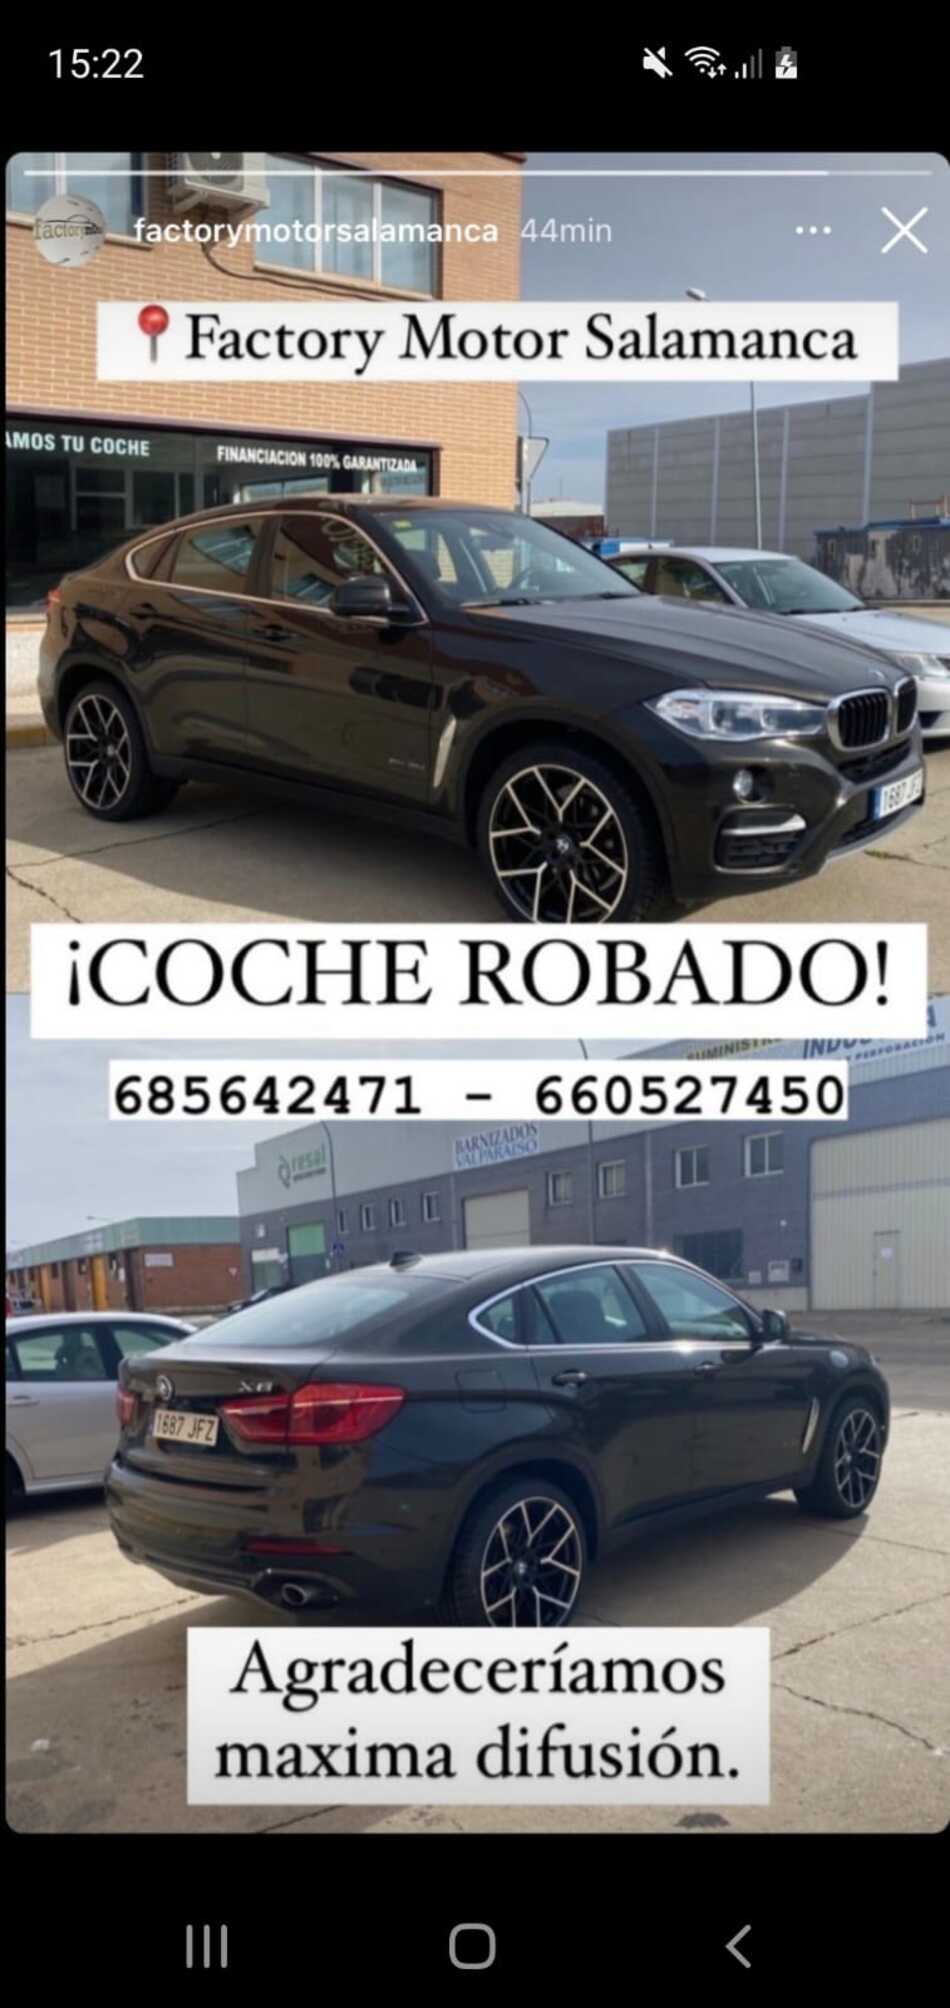 Foto 2 - Se busca coche robado en Salamanca, un turismo marca BMW X6 